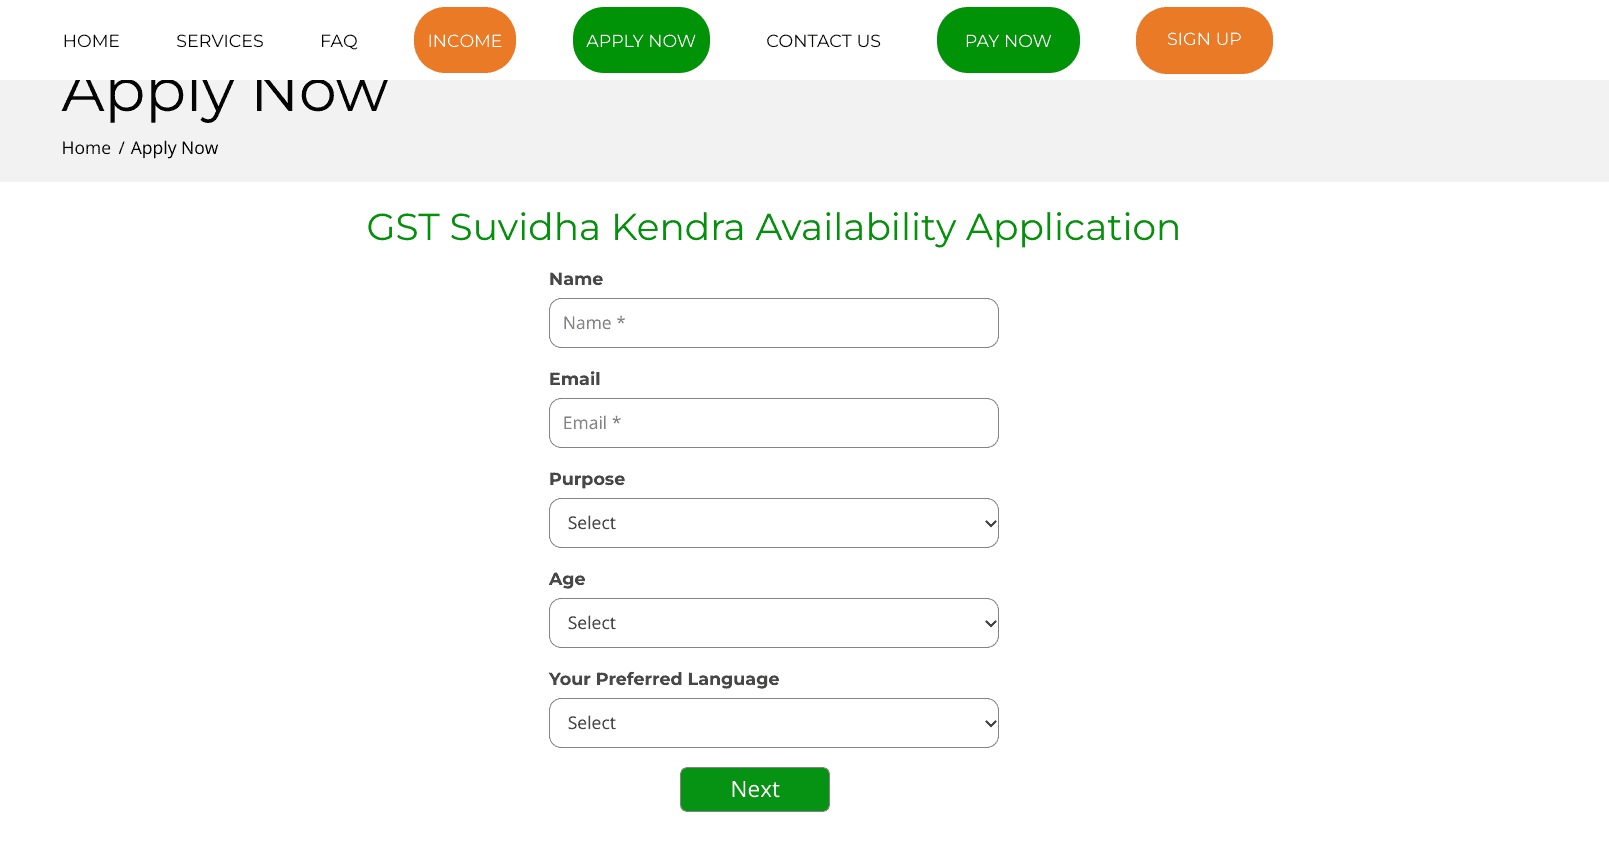 जीएसटी सुविधा केंद्र कैसे खोलें: GST Suvidha Kendra Franchise Registration